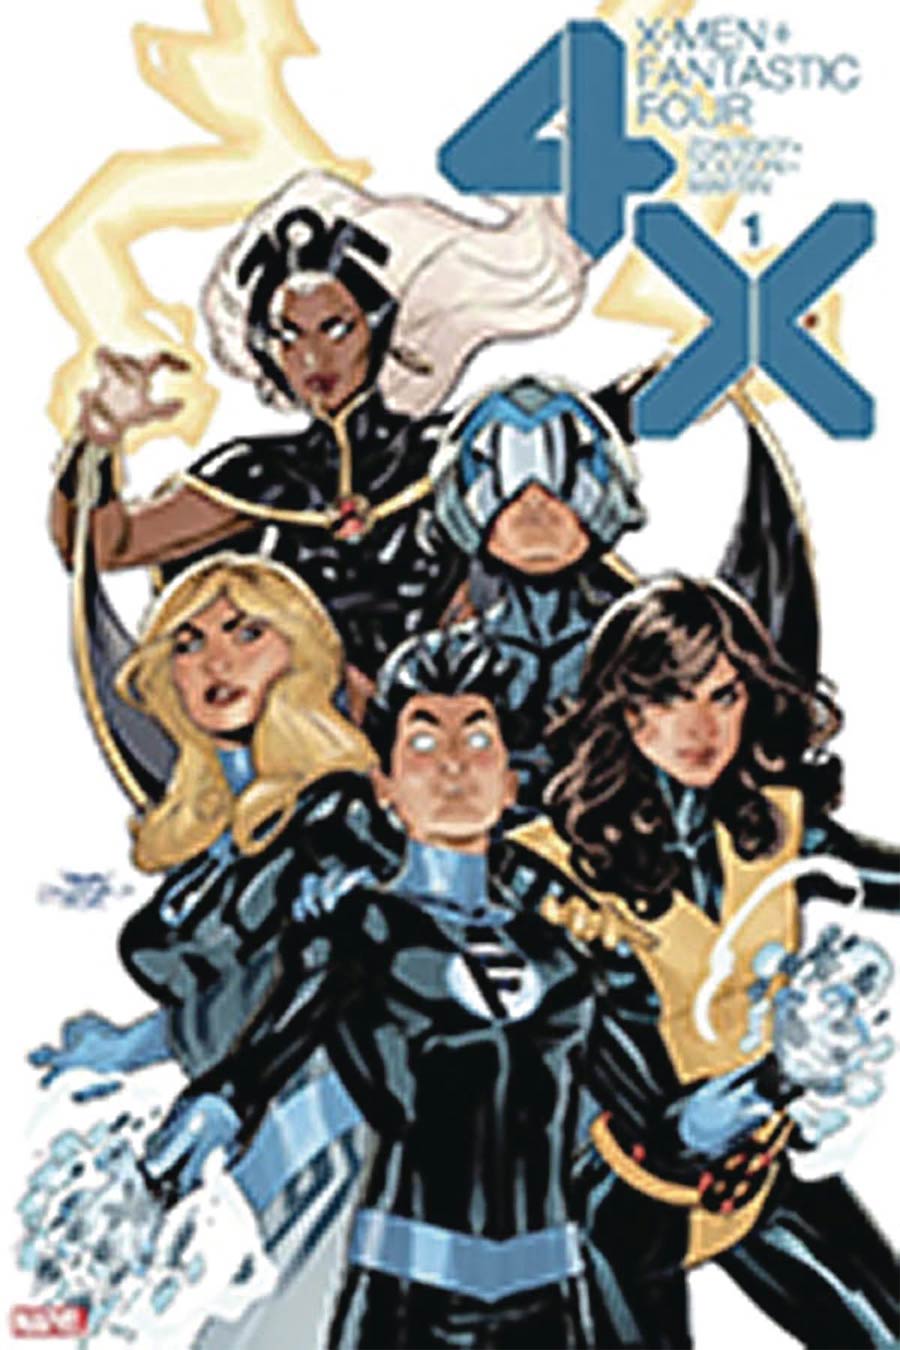 X-Men Fantastic Four Vol 2 #1 Cover G DF Signed By Terry Dodson & Rachel Dodson